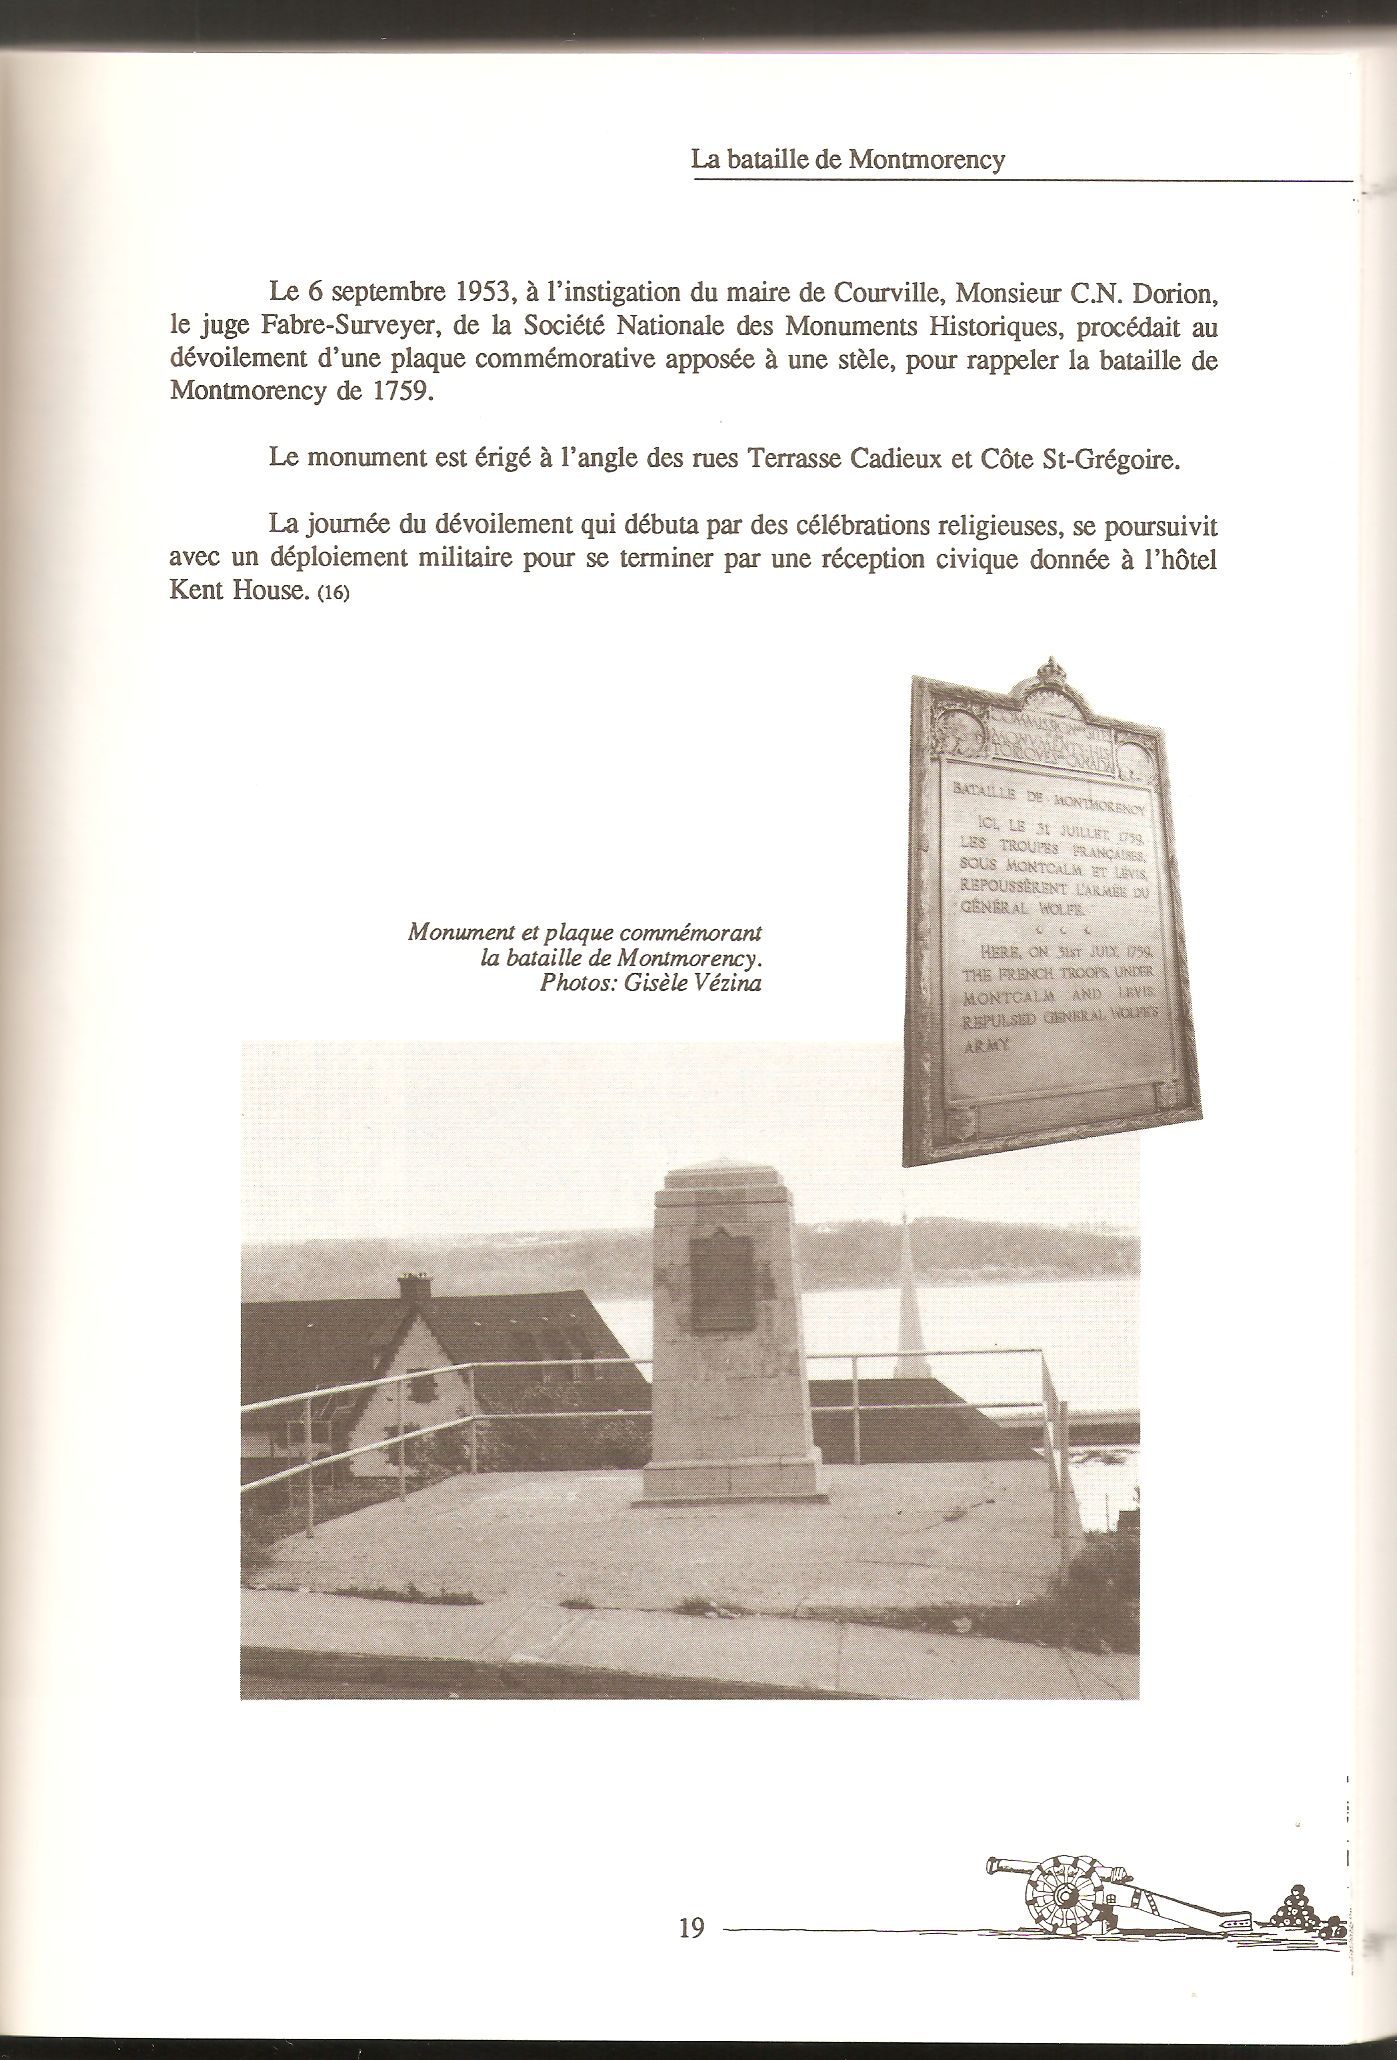 Mention de l'inauguration de la plaque commémorative de la bataille de Montmorency, dévoilée le 6 septembre 1953, sur la Terrasse Cadieux. Cette plaque commémorative a malheureusement aujourd'hui disparu.